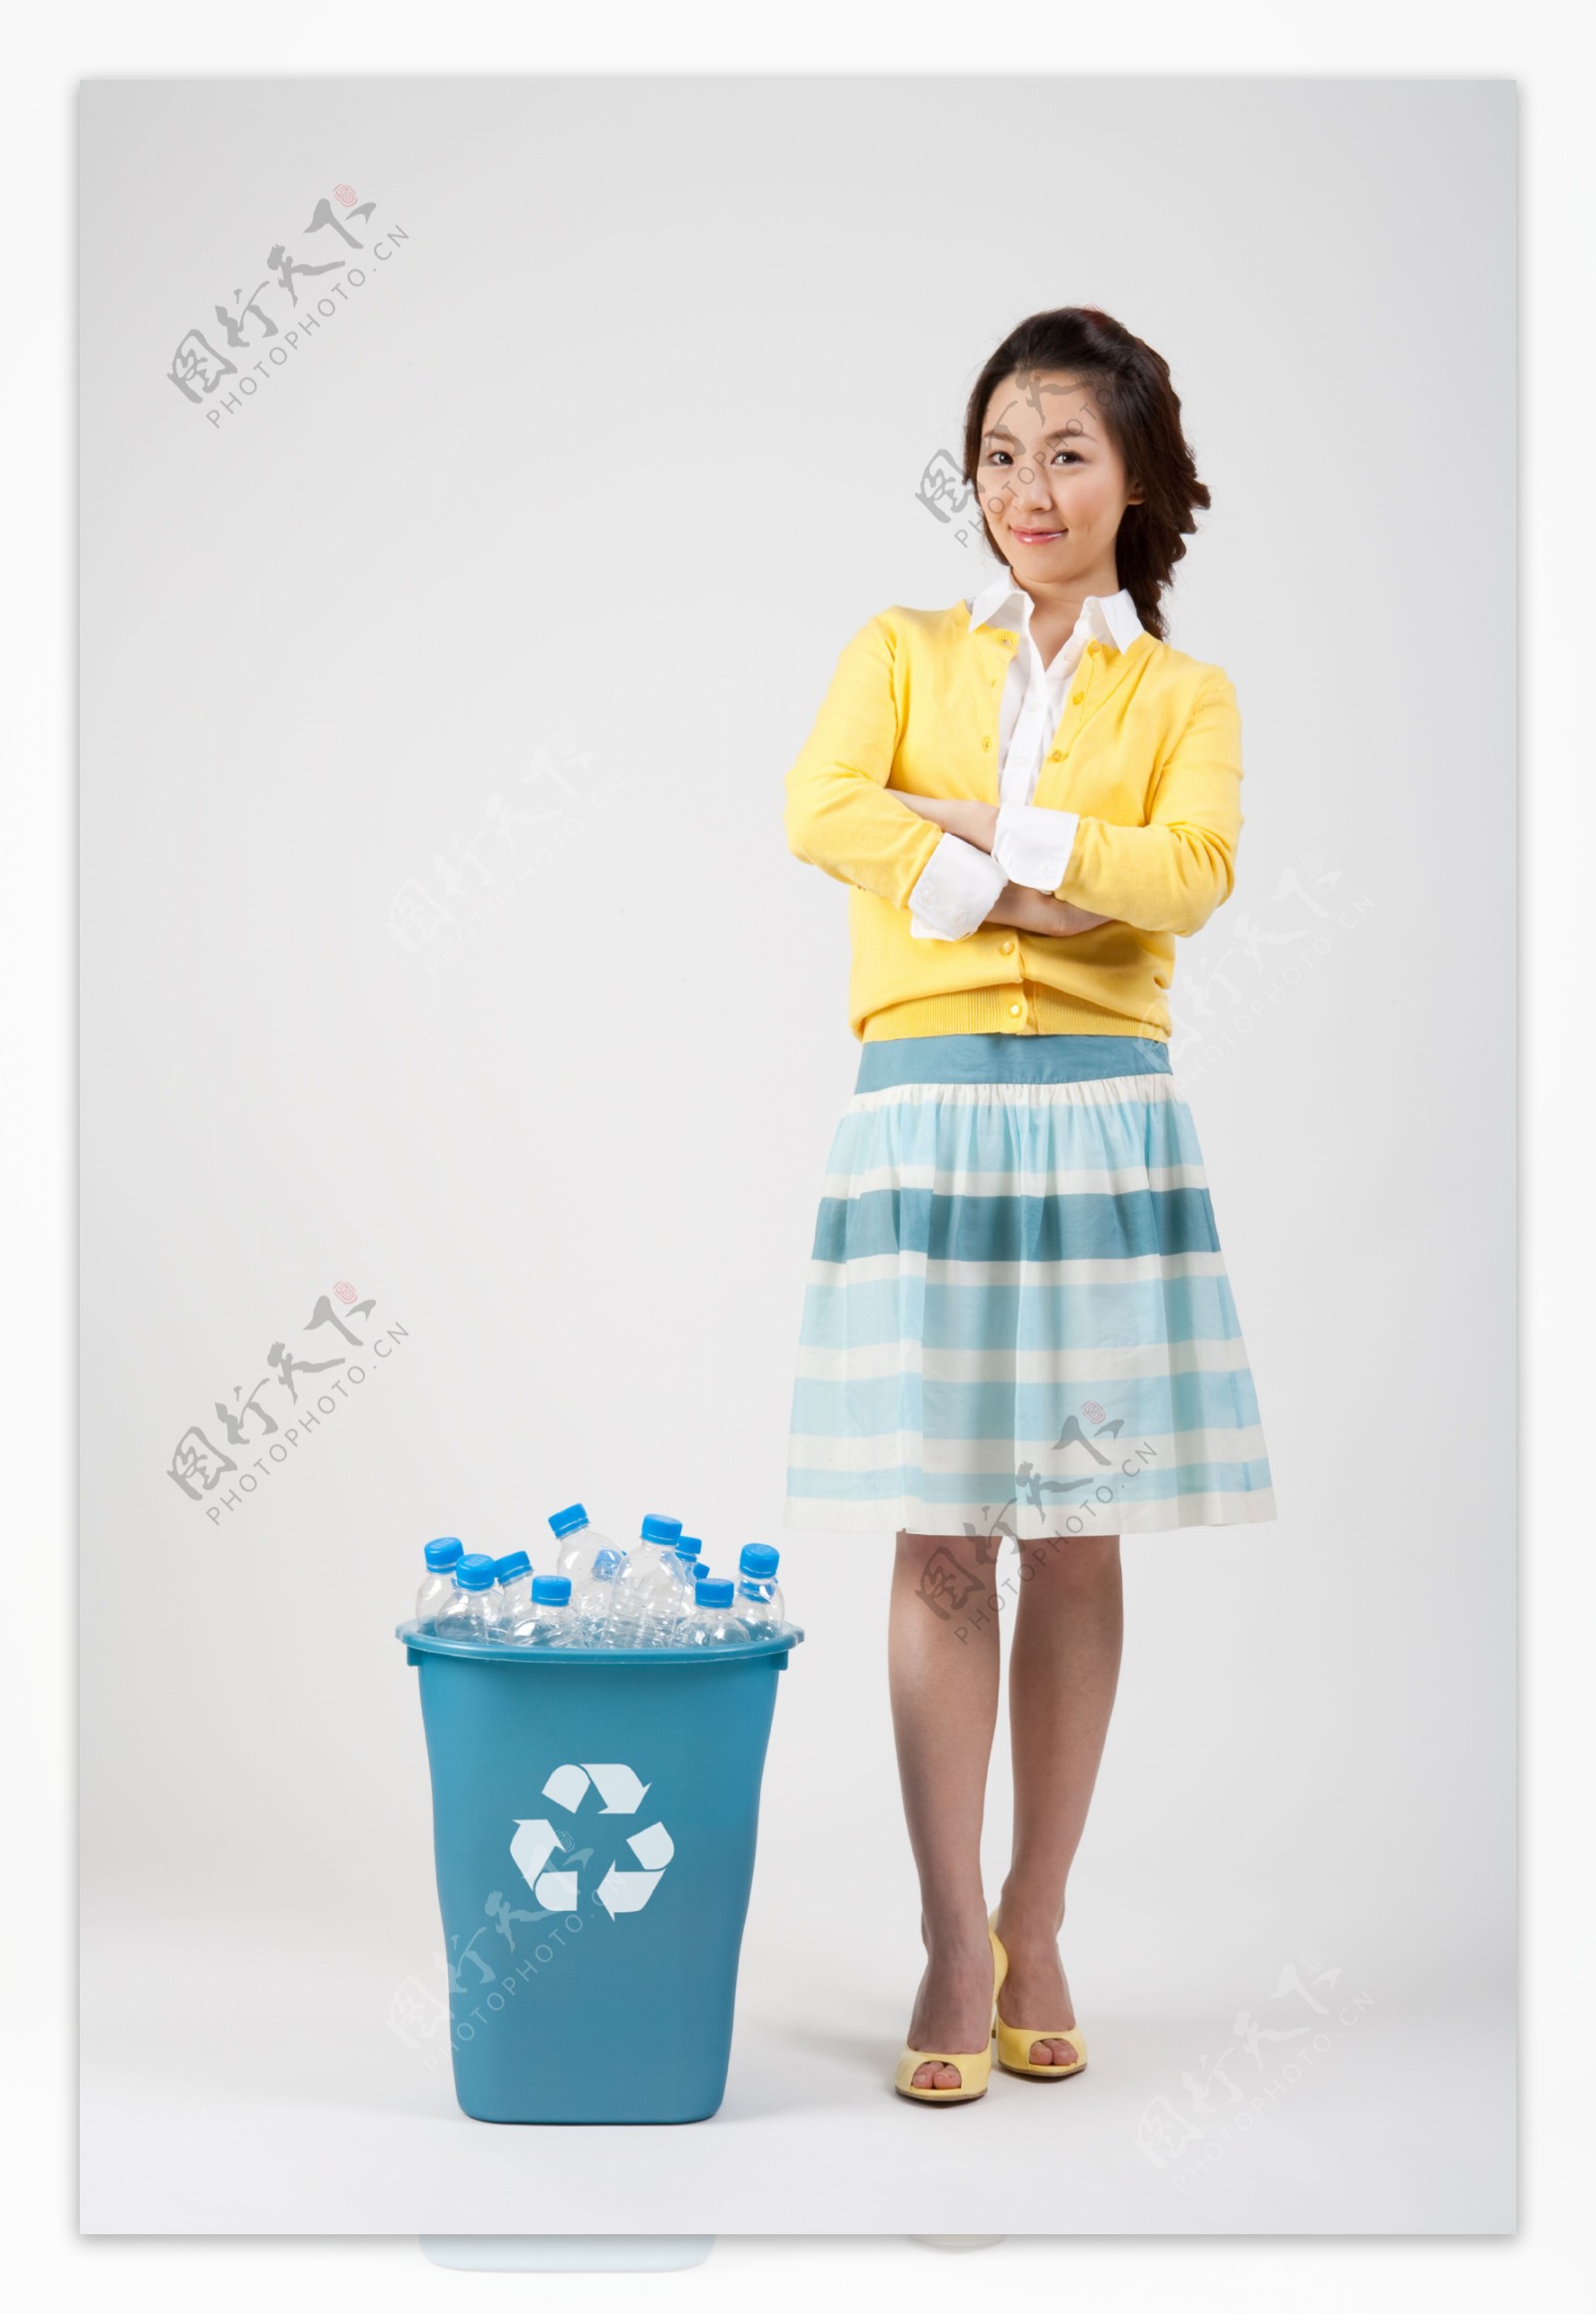 垃圾桶与环保志愿者美女图片